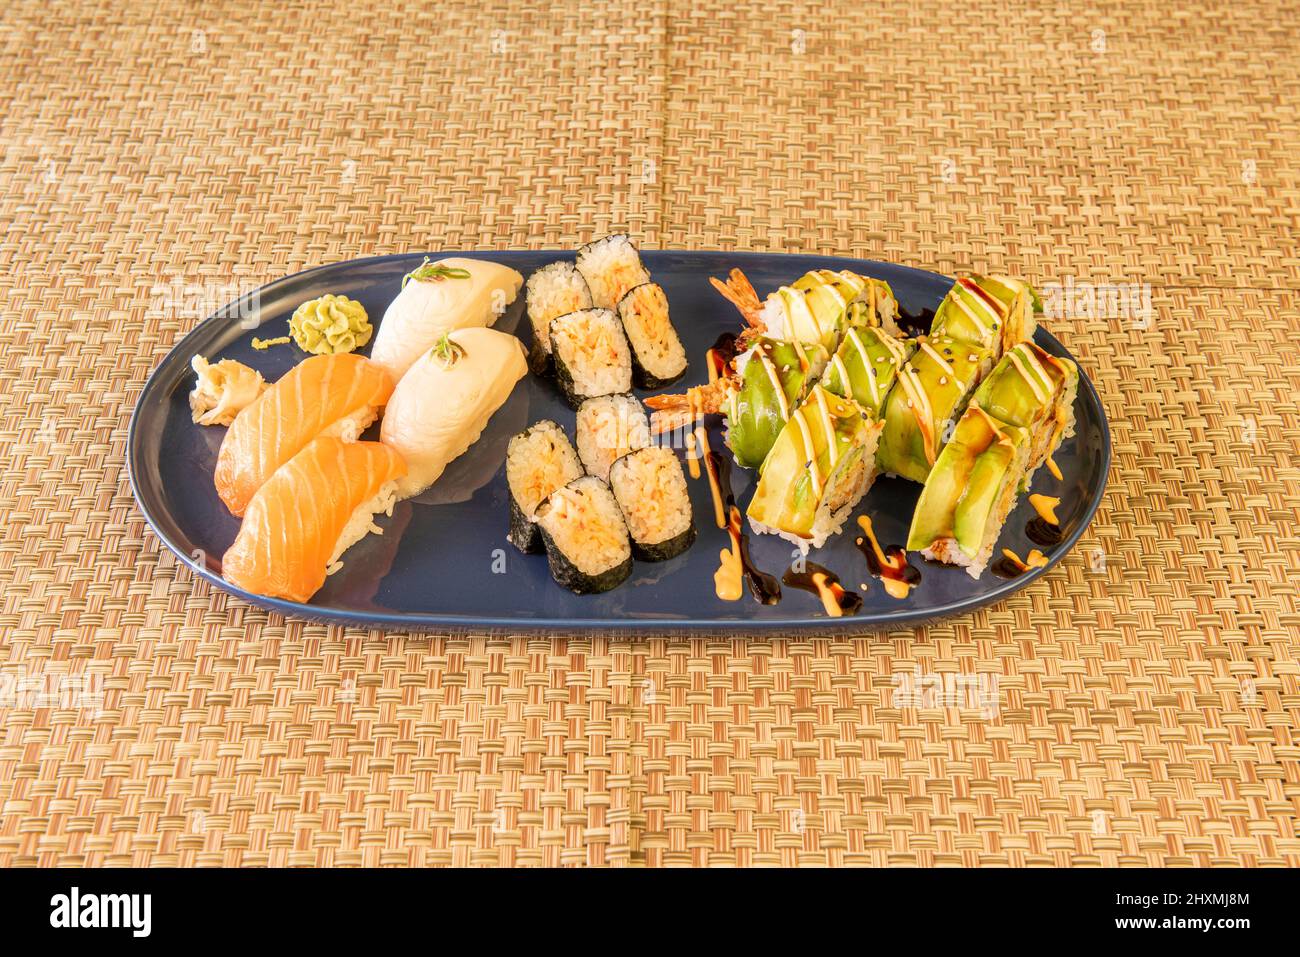 Assortiment de sushis, nigiri de thon rouge, saumon norvégien, maki de thon, rouleau de Californie uramaki, le saumon, le wasabi et le gingembre Banque D'Images